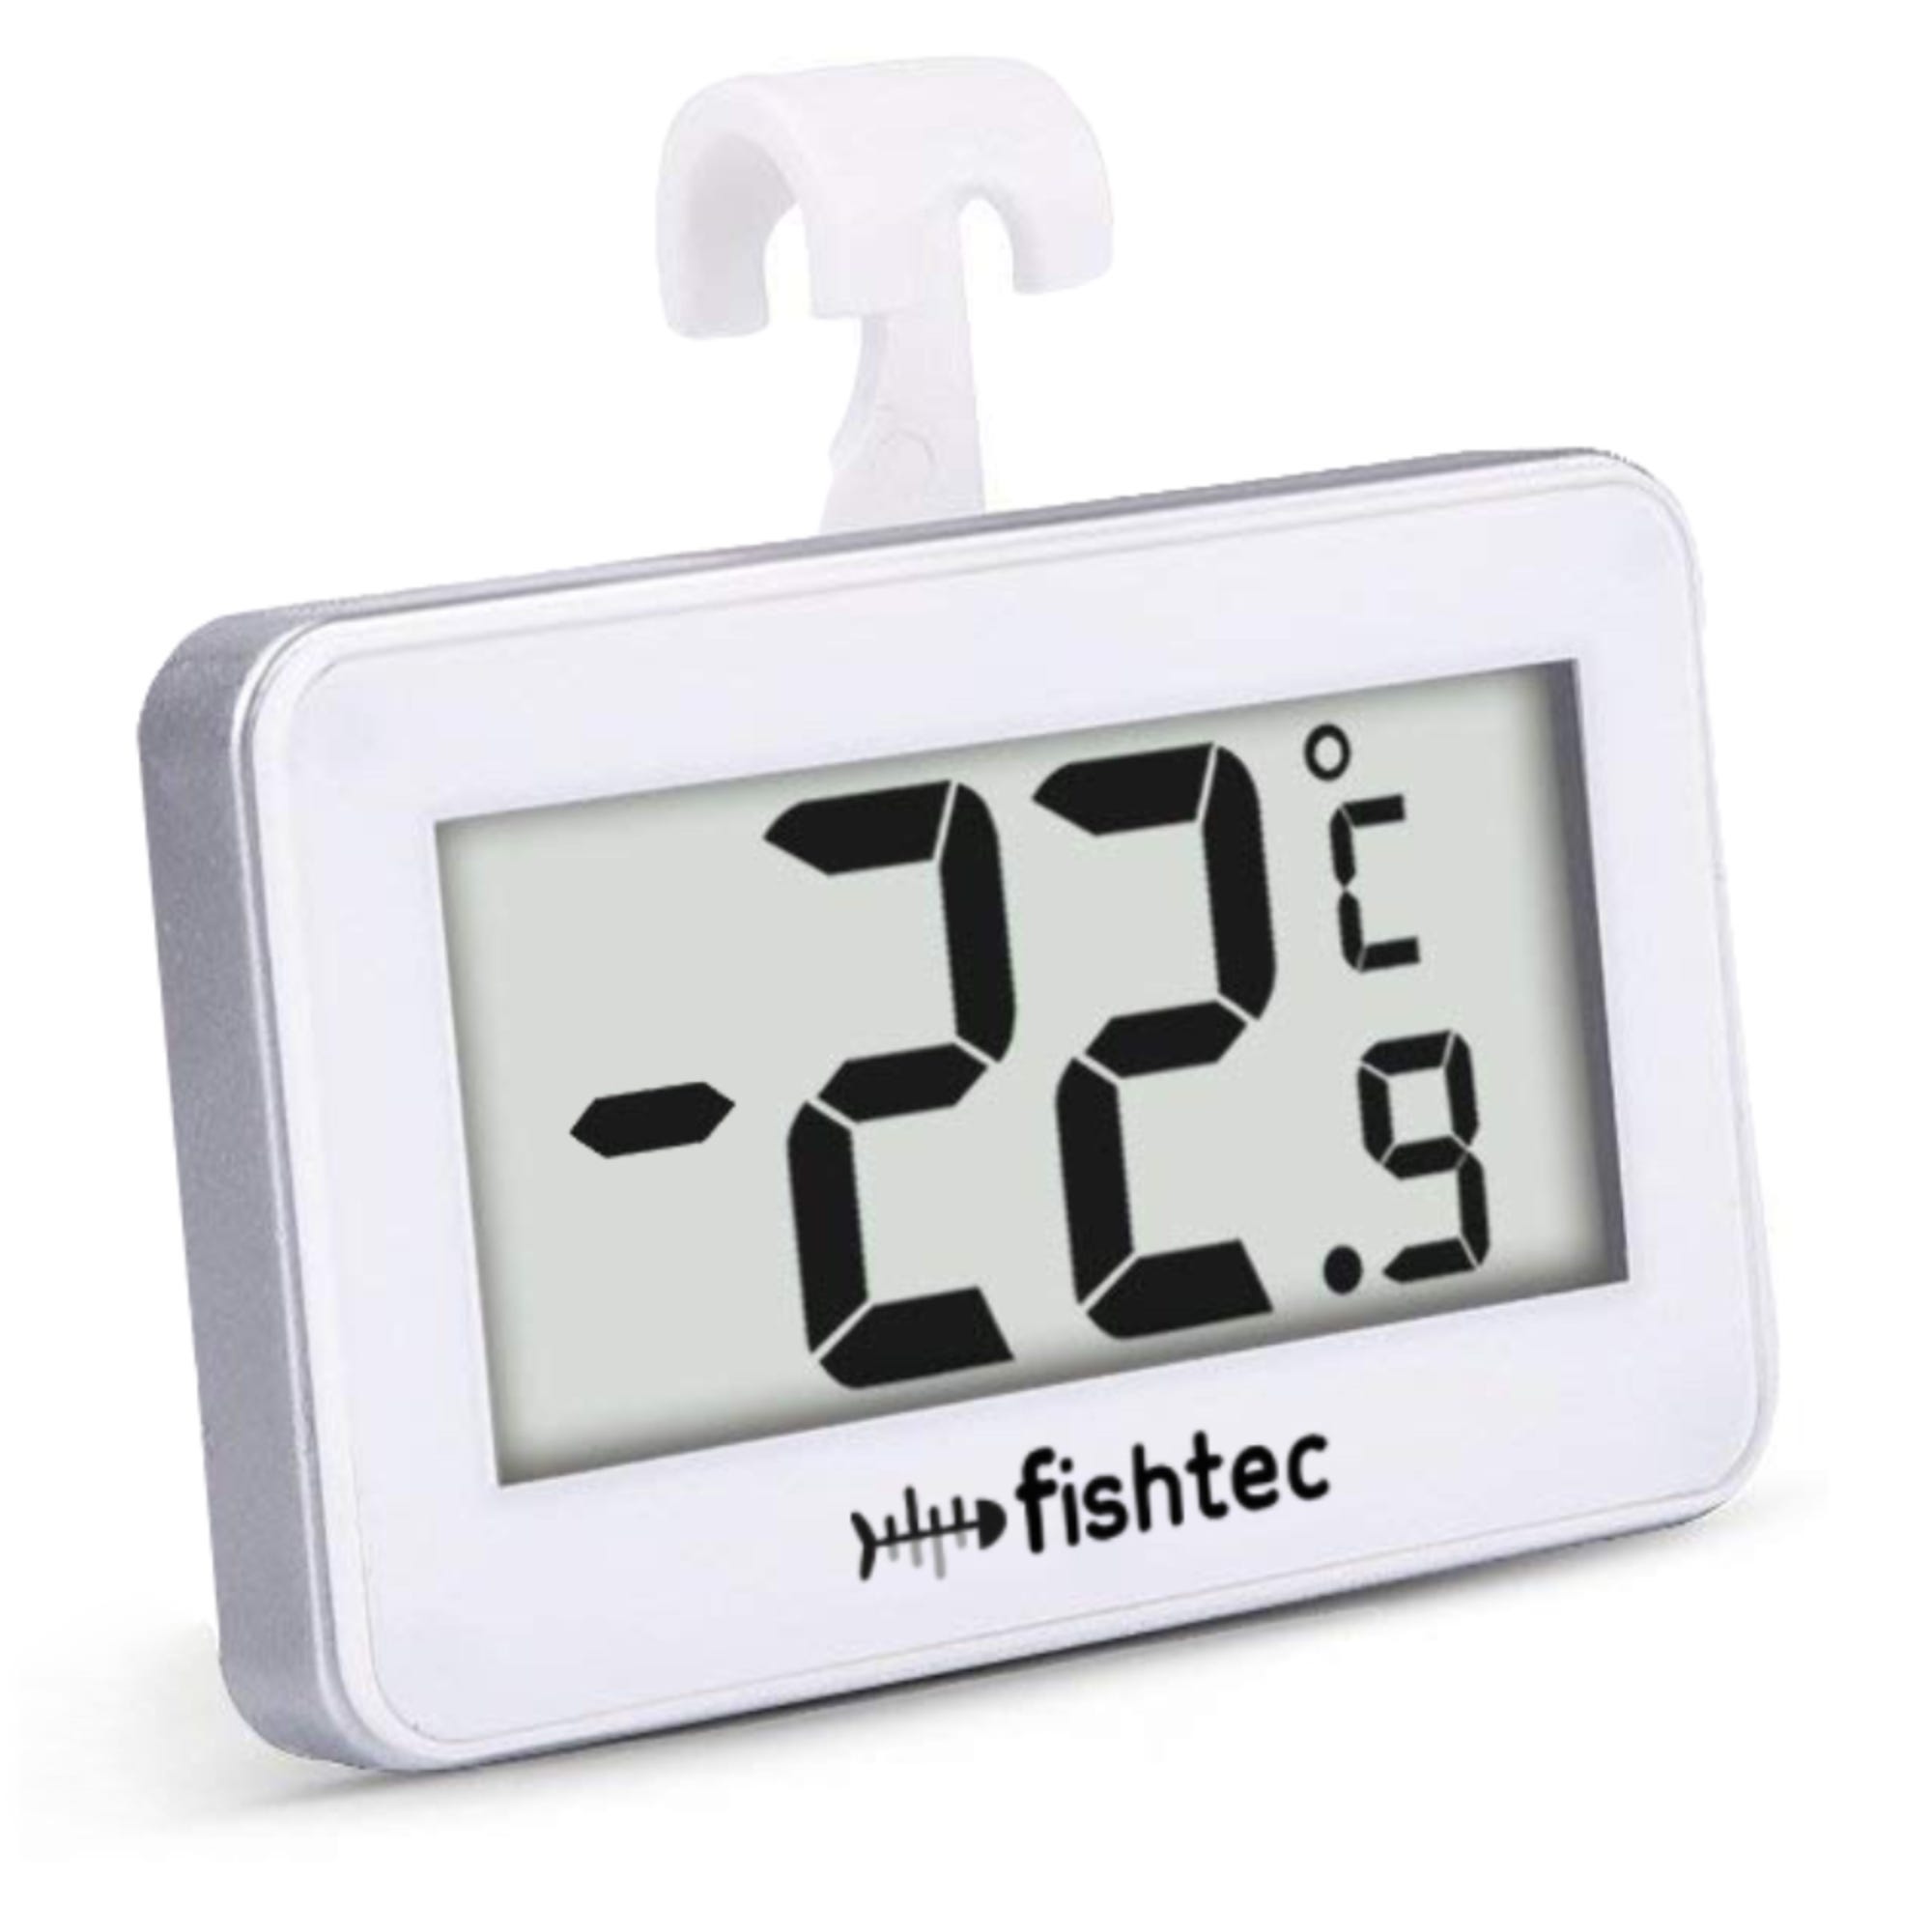 FISHTEC Thermometre de Frigo Electronique - Triple systeme d